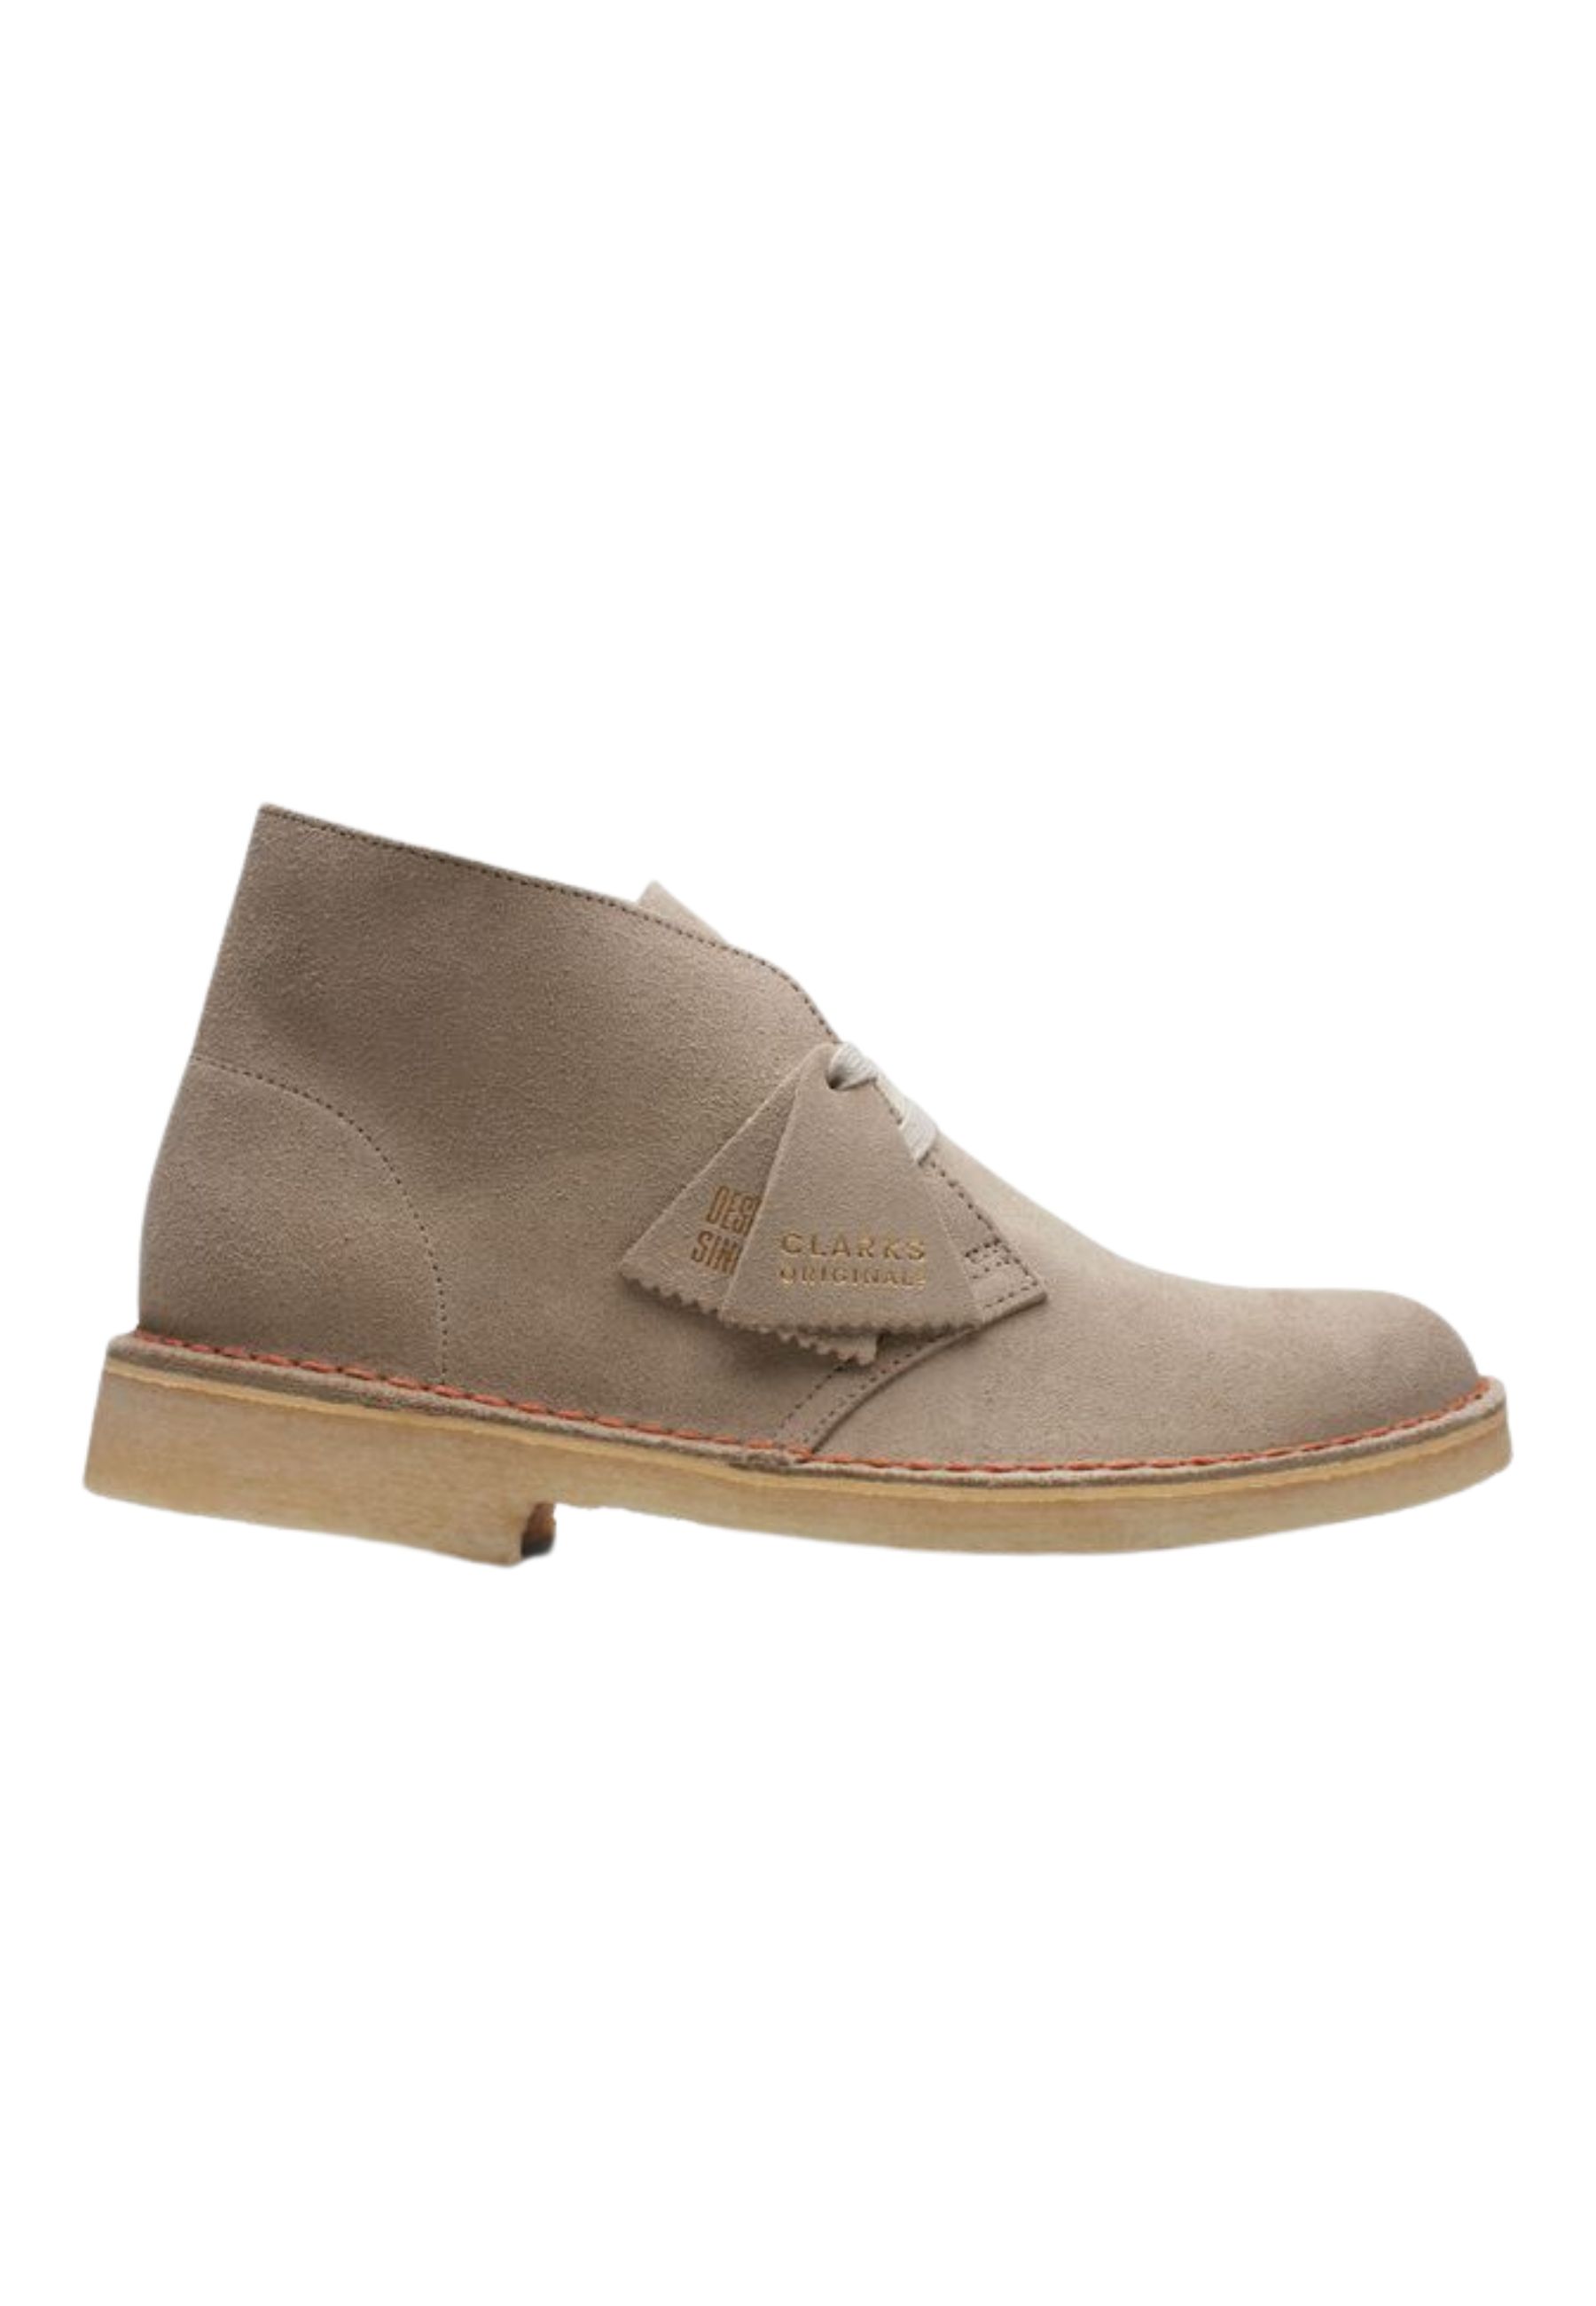 Clarks - Heren schoenen - Desert Boot - G - Beige - maat 11